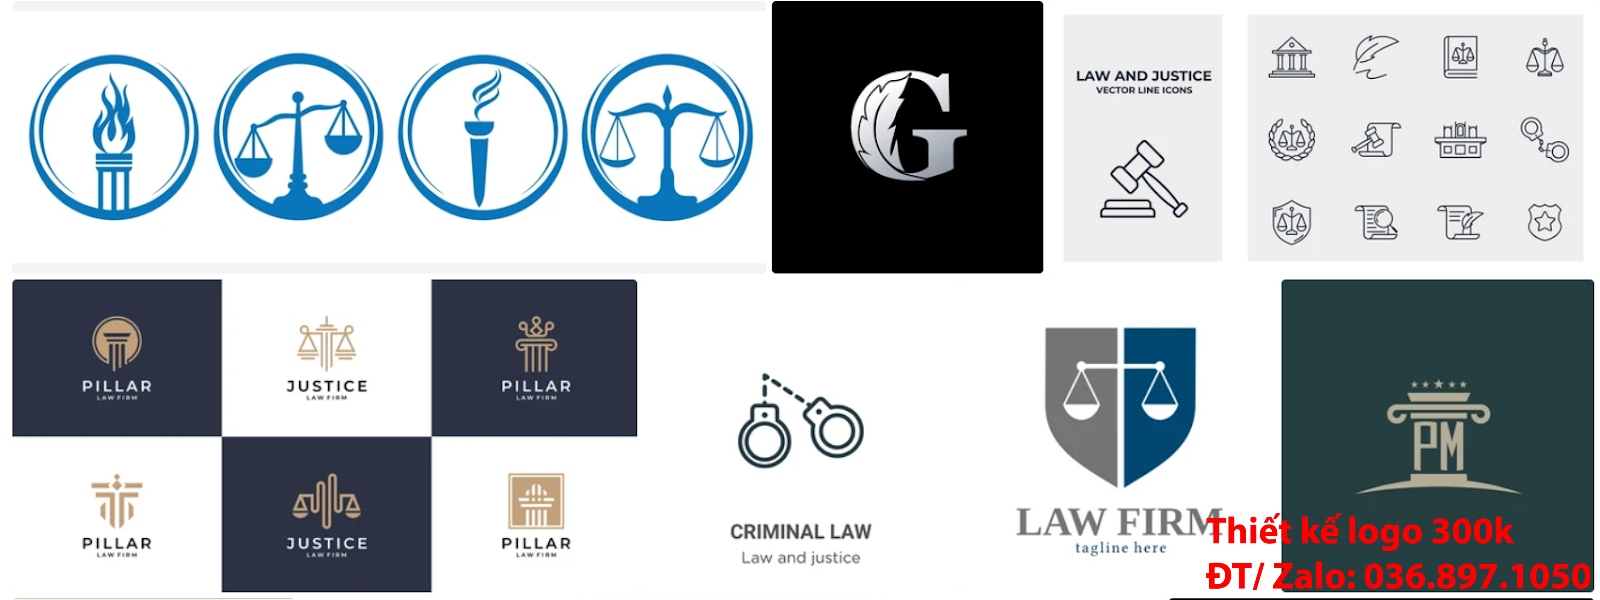 Đơn vị chuyên tạo lô gô cho các công ty tại Hà Nội giá rẻ có Mẫu logo công ty luật sư đẹp miễn phí